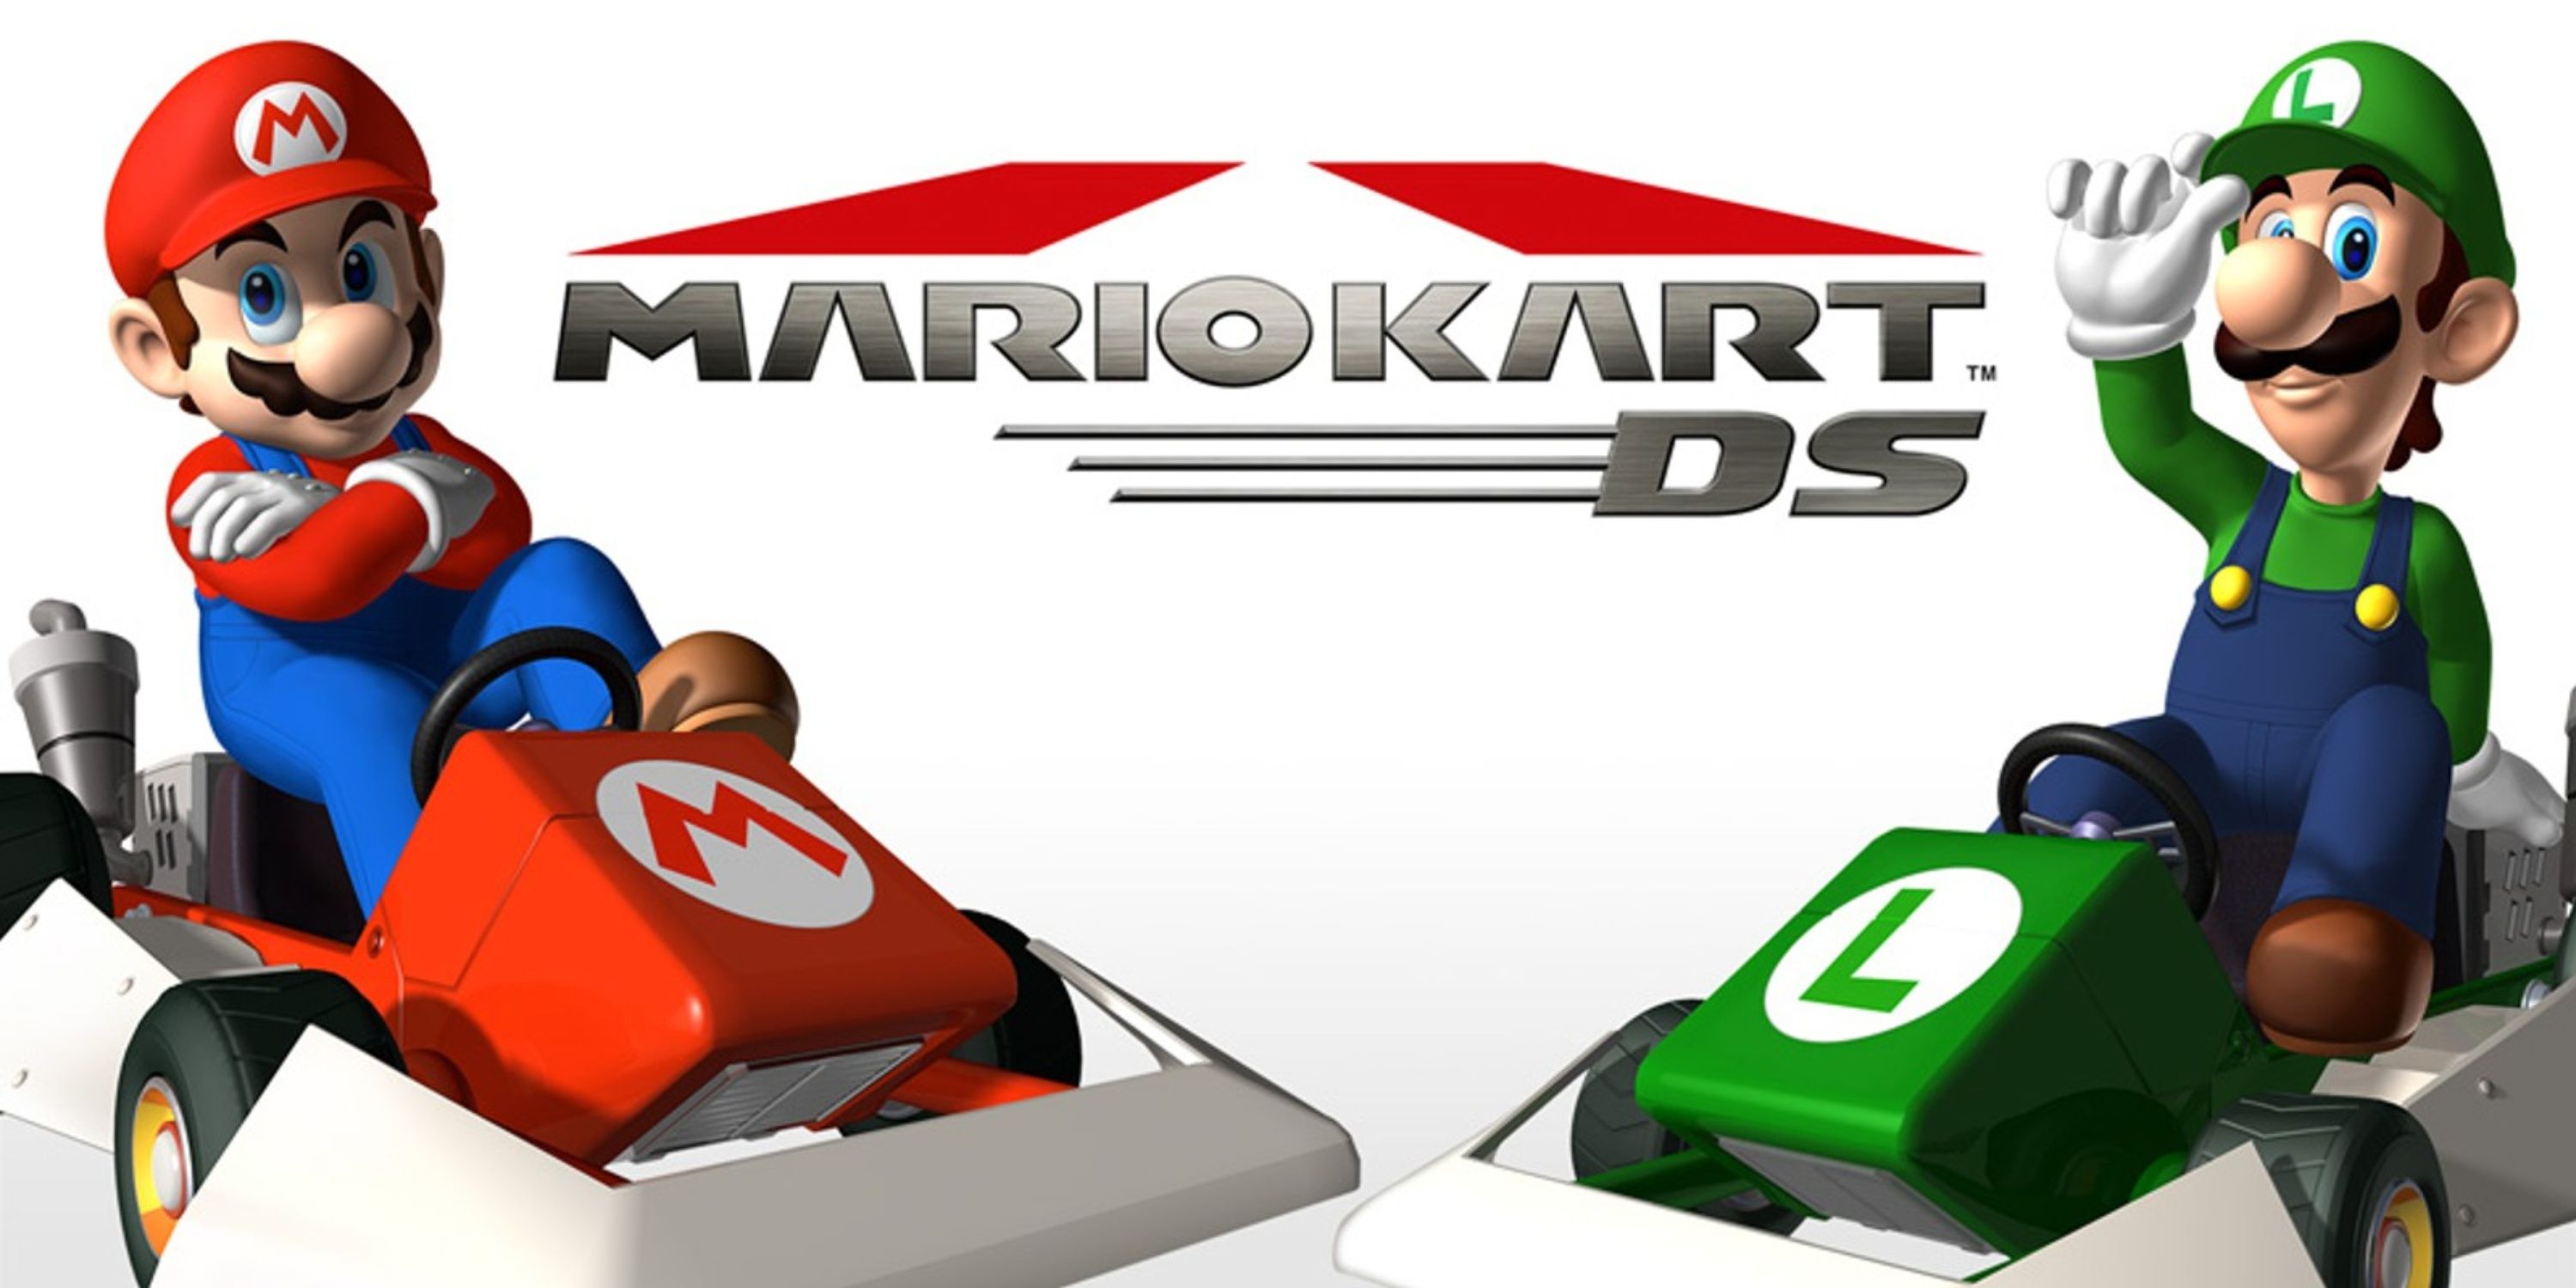 Luigi Et Mario Sur L'Art De La Boîte De Mario Kart Ds